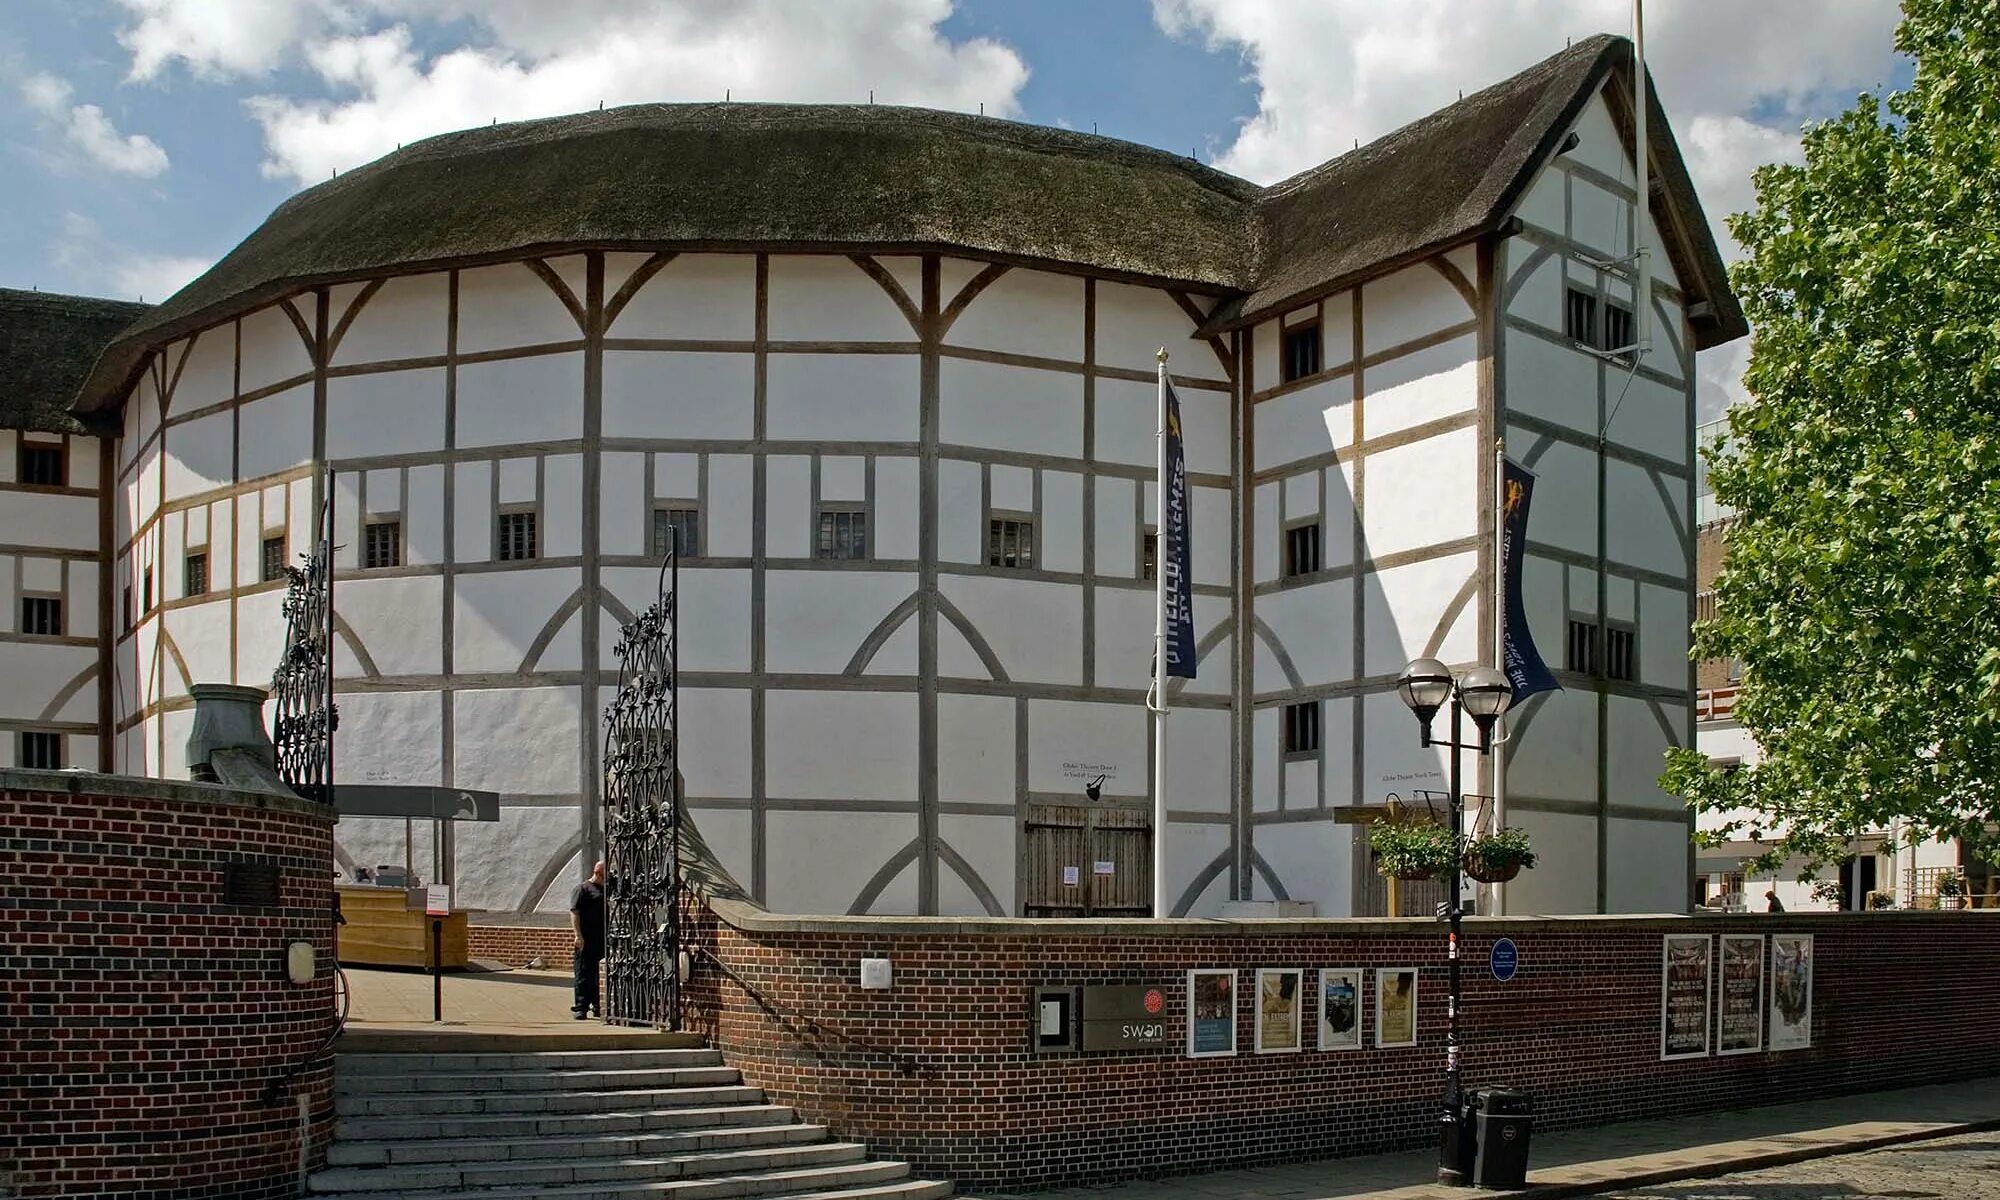 Уильям Шекспир театр Глобус. Театр Глобус в Лондоне. Шекспировский театр Глобус в Лондоне. Театр Глобус Шекспира 1599.